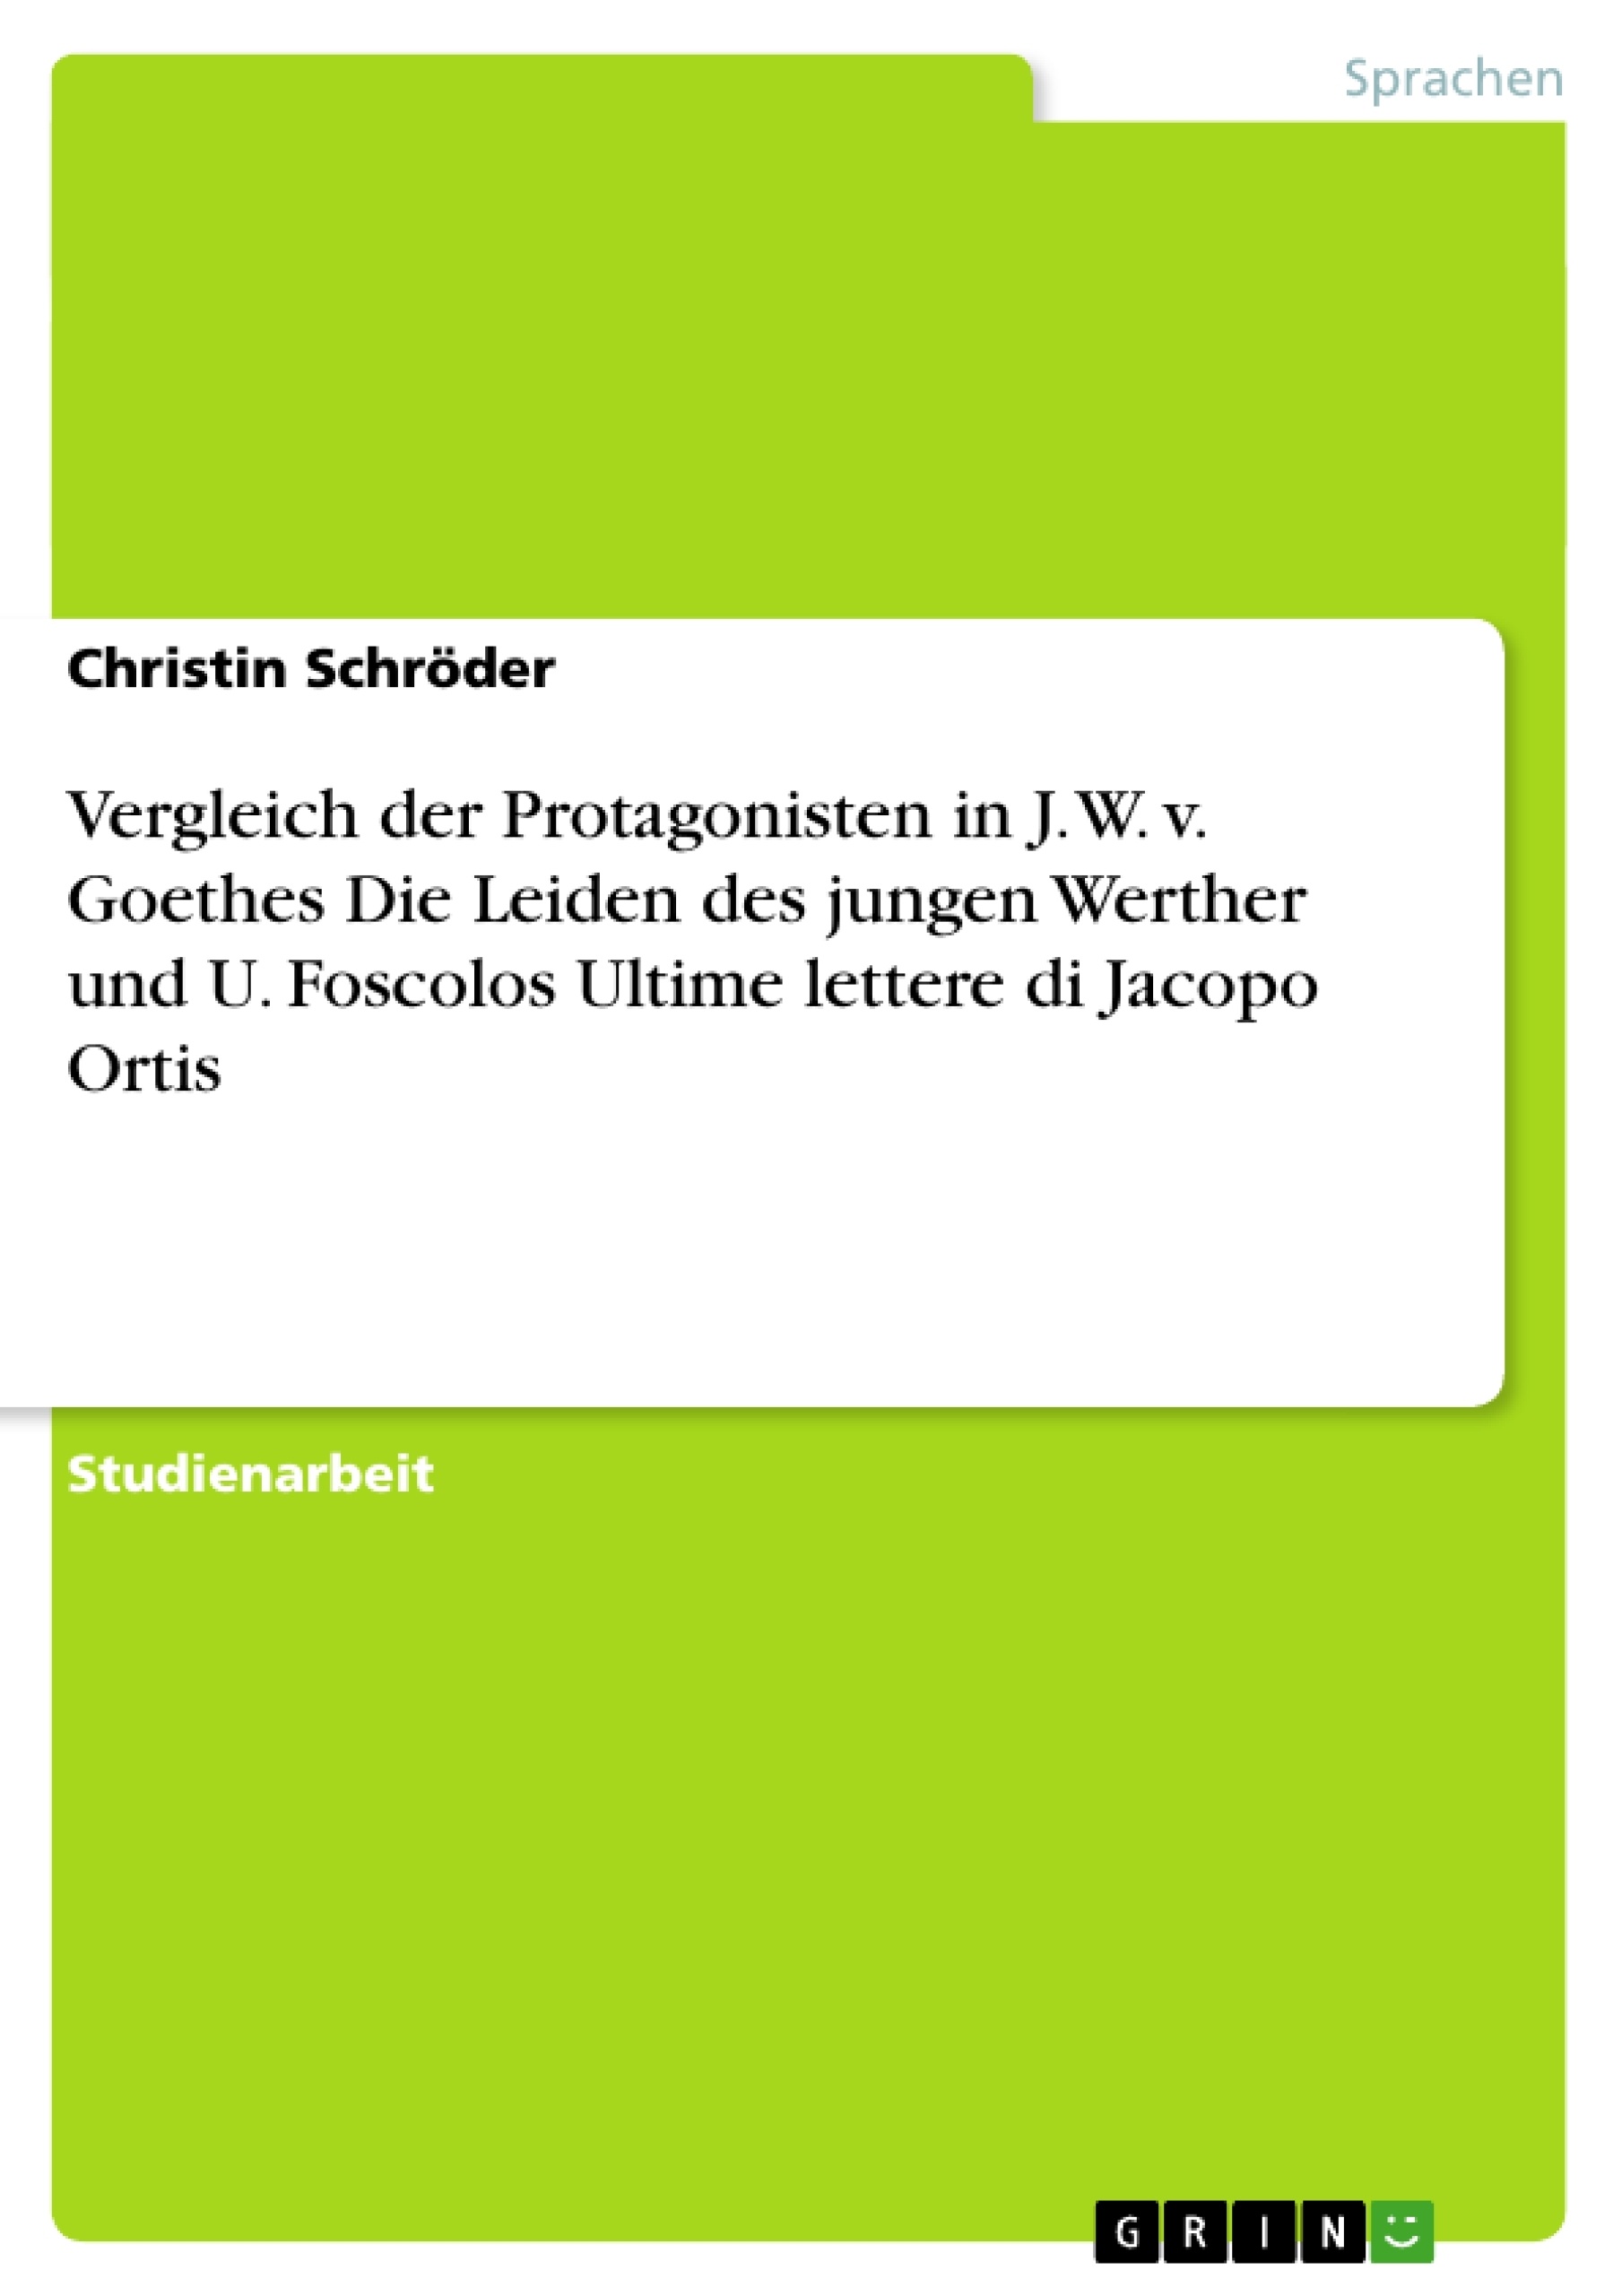 Título: Vergleich der Protagonisten in J. W. v. Goethes Die Leiden des jungen Werther und U. Foscolos Ultime lettere di Jacopo Ortis